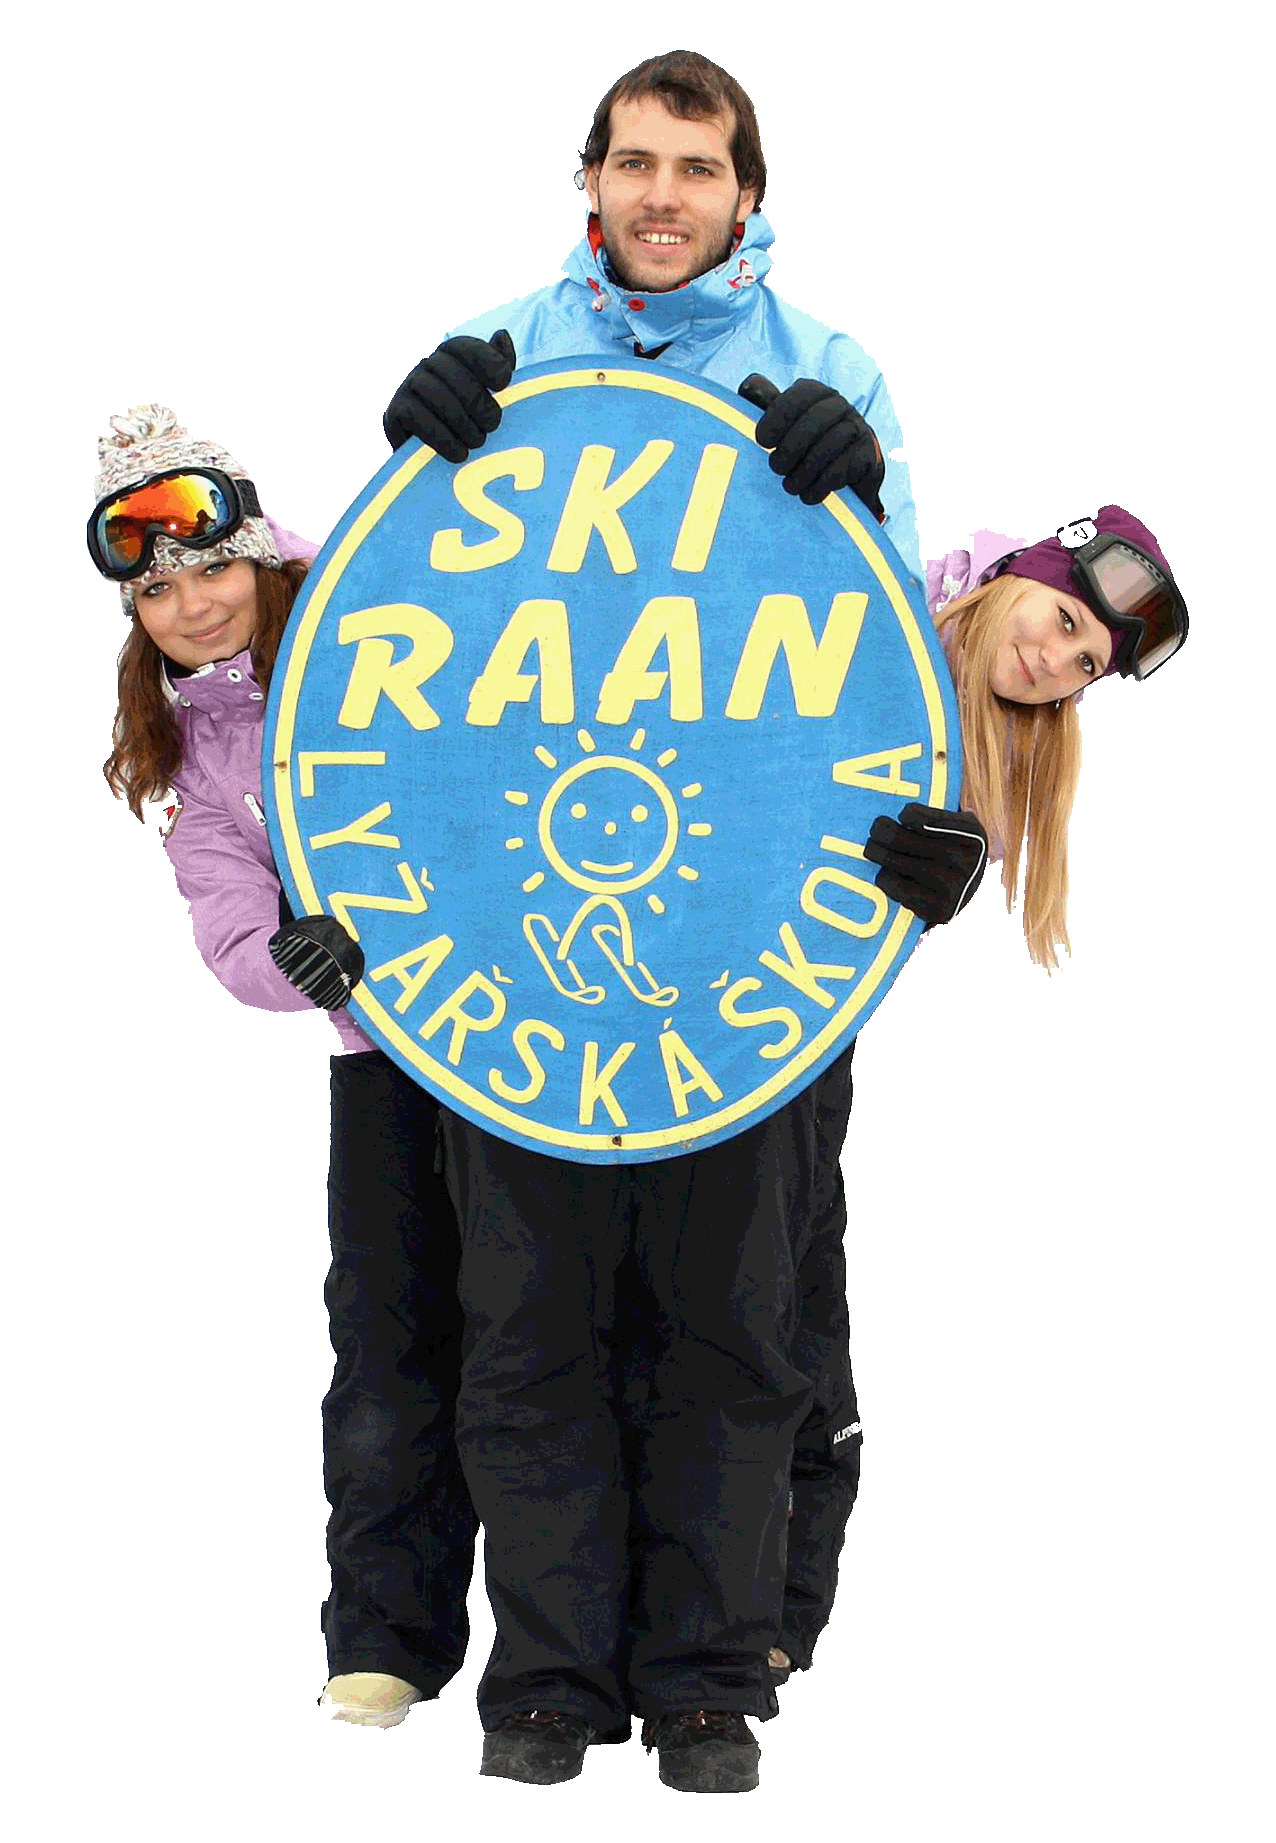 Skupina instruktorů držící logo SKI RAAN